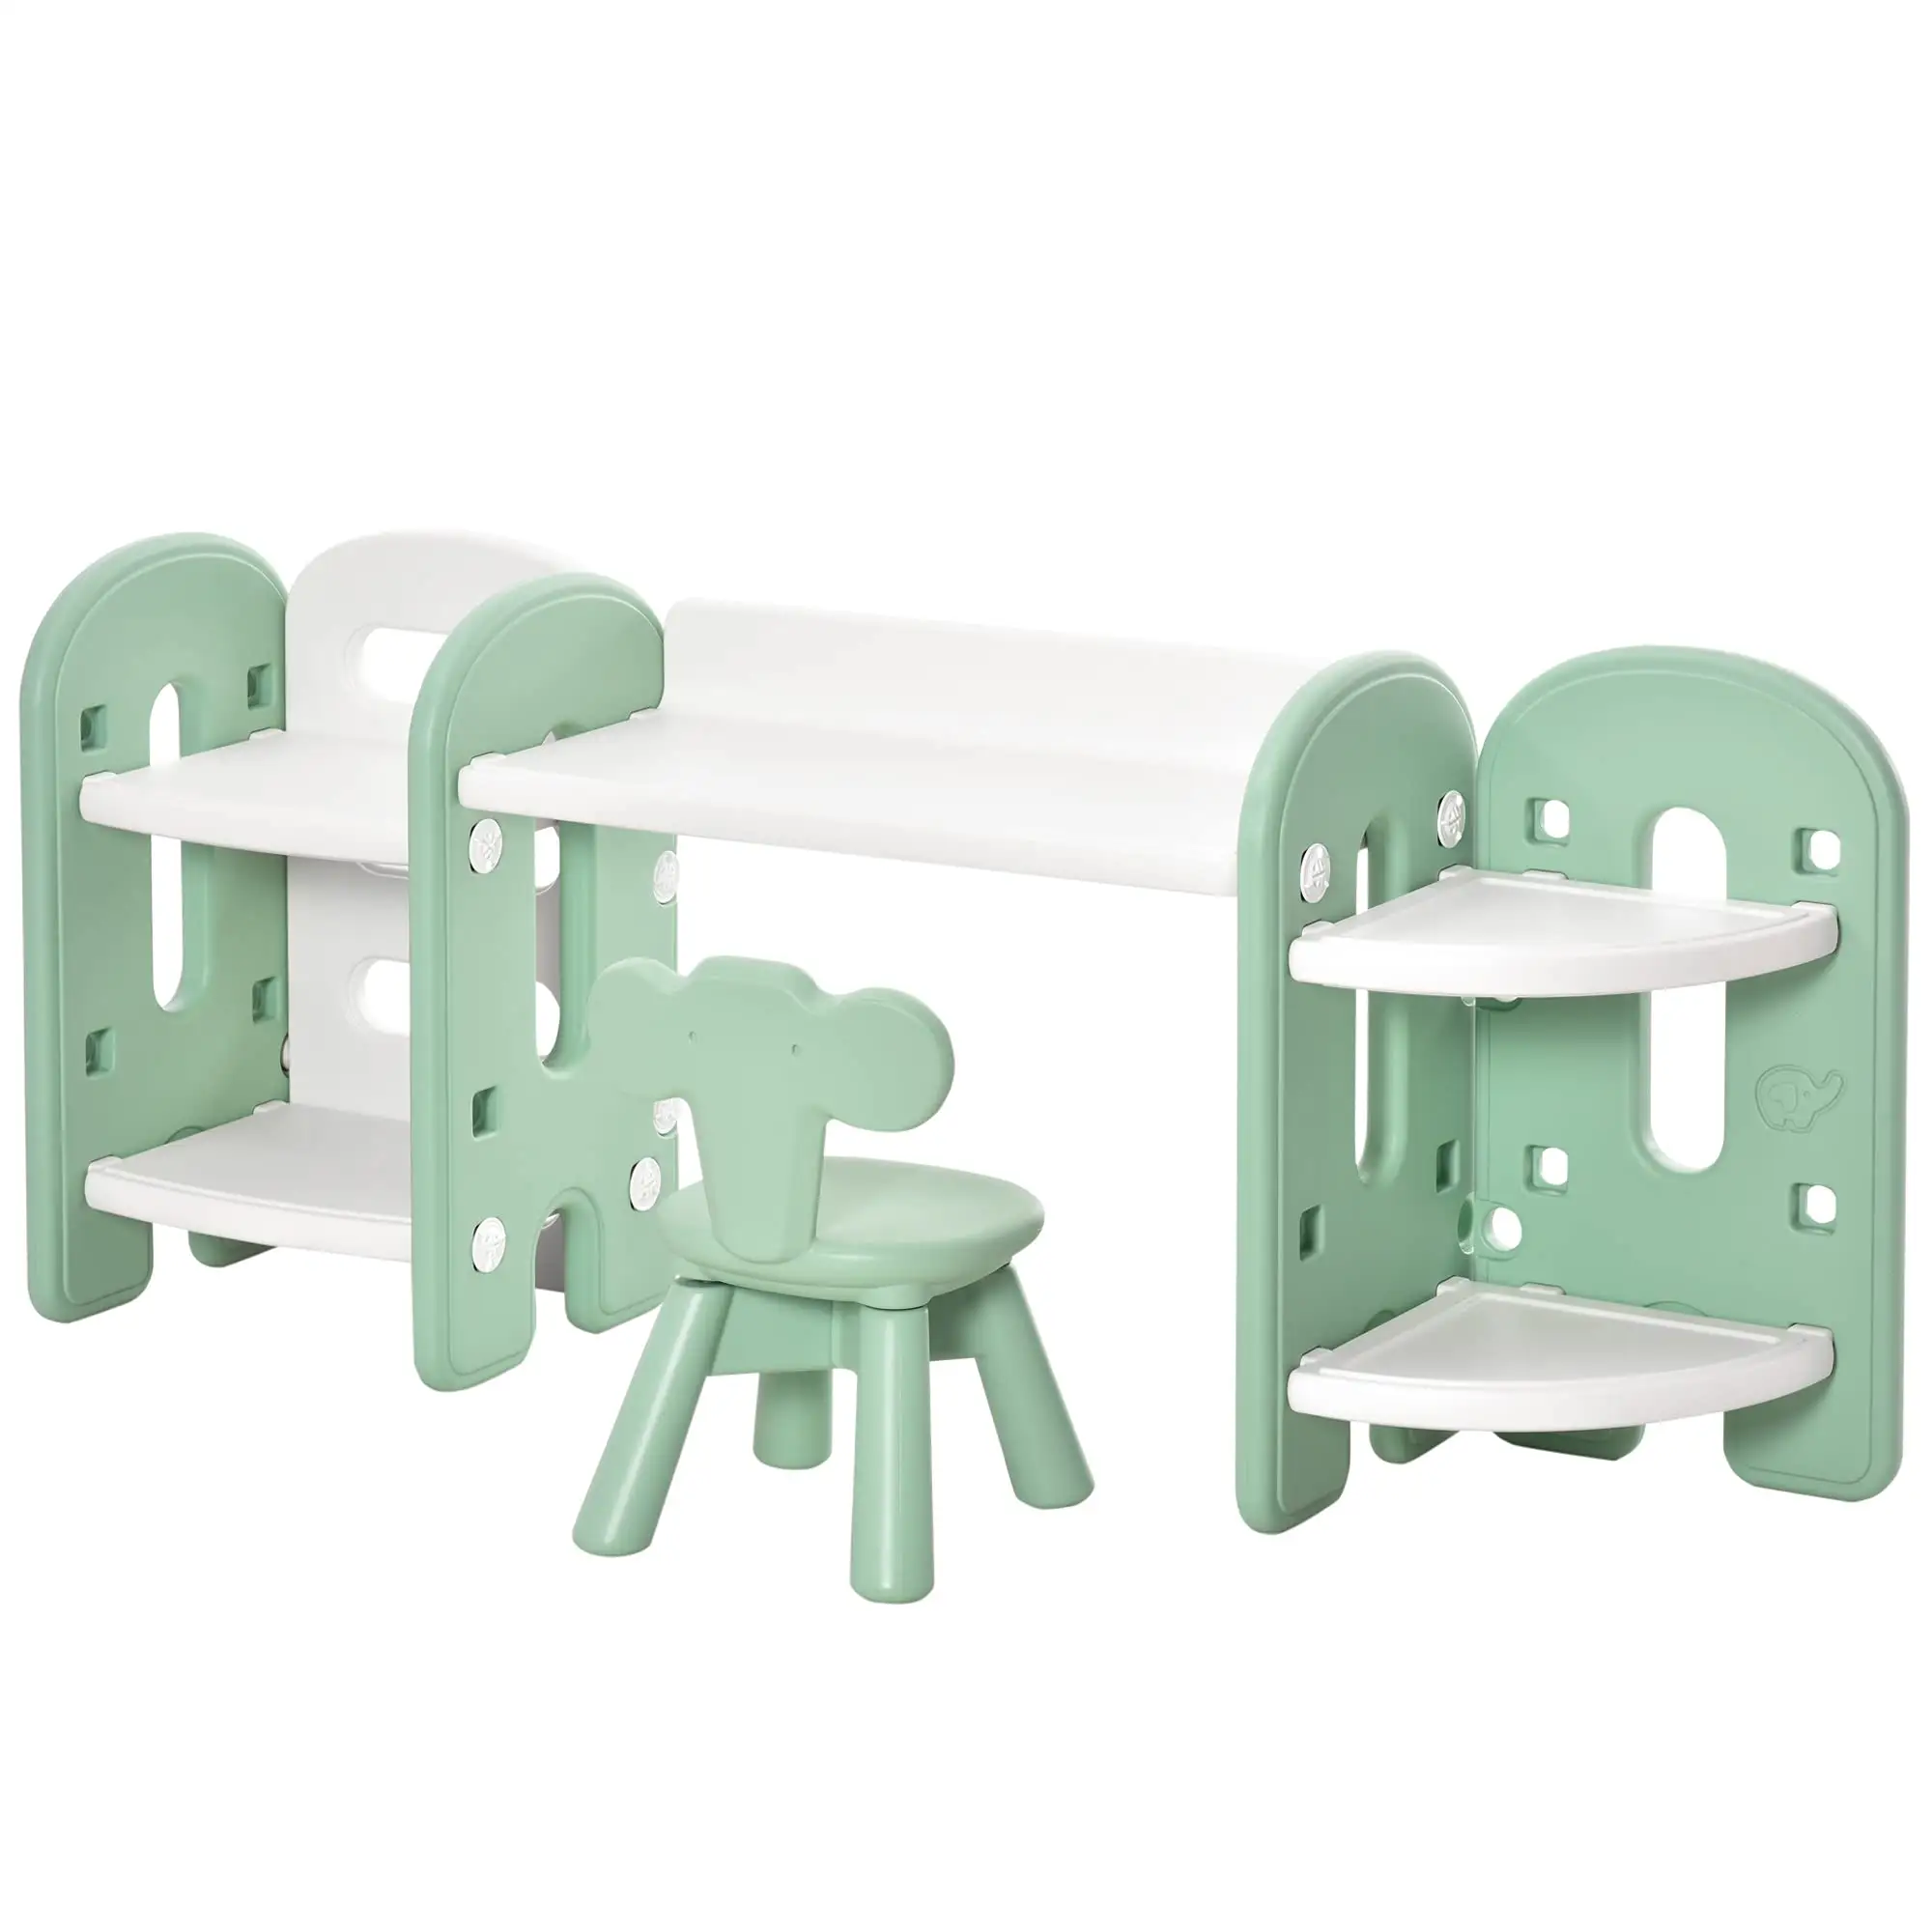 ABST Kinder möbel Hersteller Baby Kindergarten Kindertag stätte Tisch und Stuhl Kinder Multifunktion sraum Möbel Tisch & Stuhl Sets